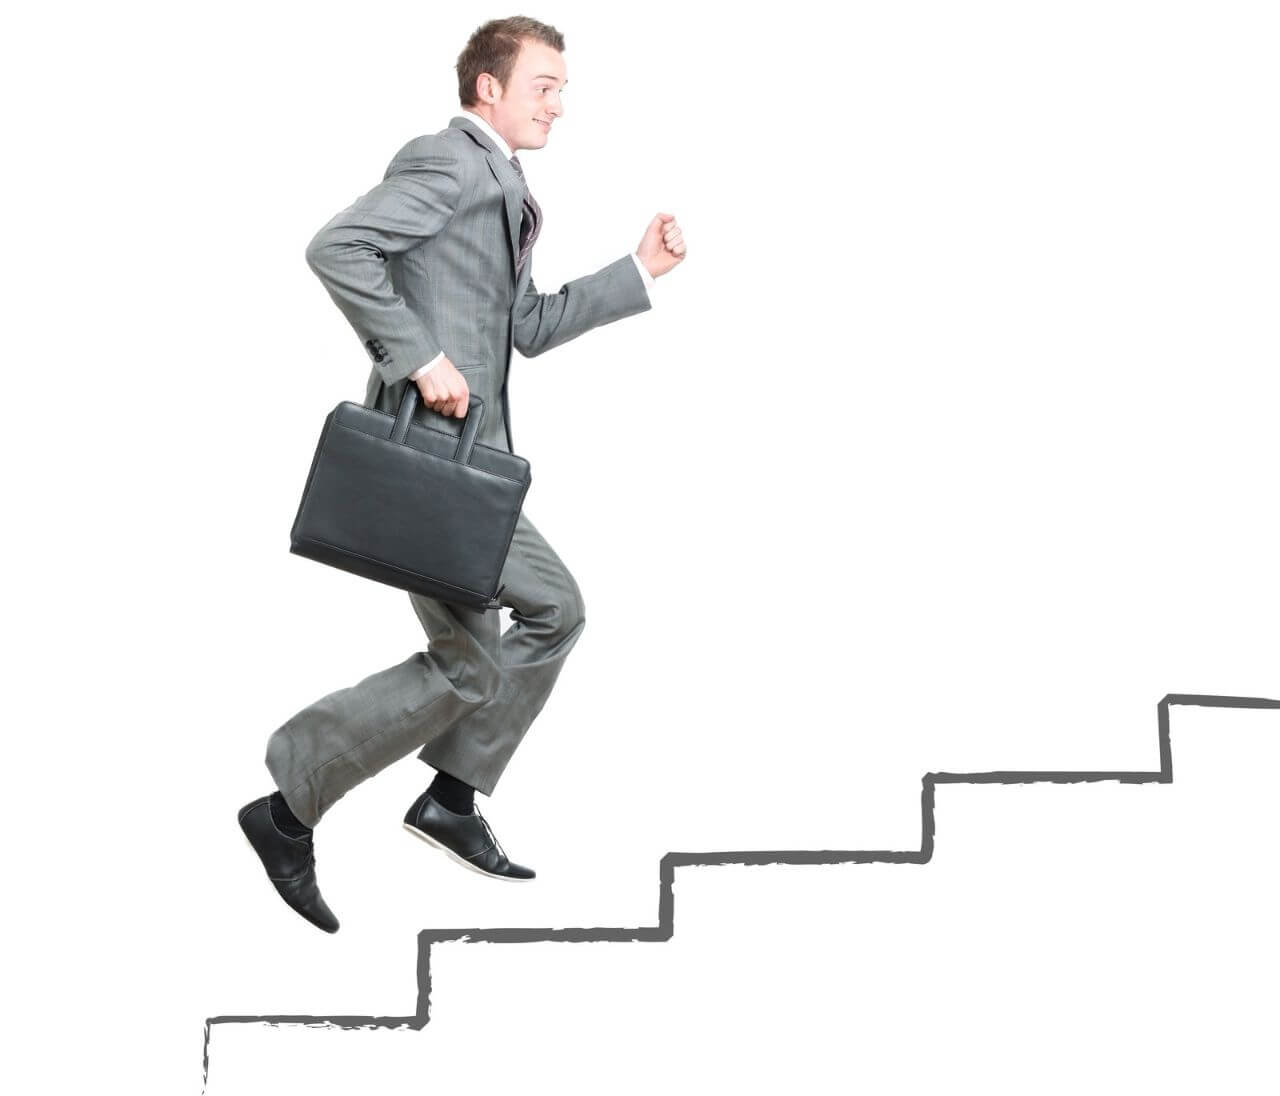 Climbing Ladder Of Success